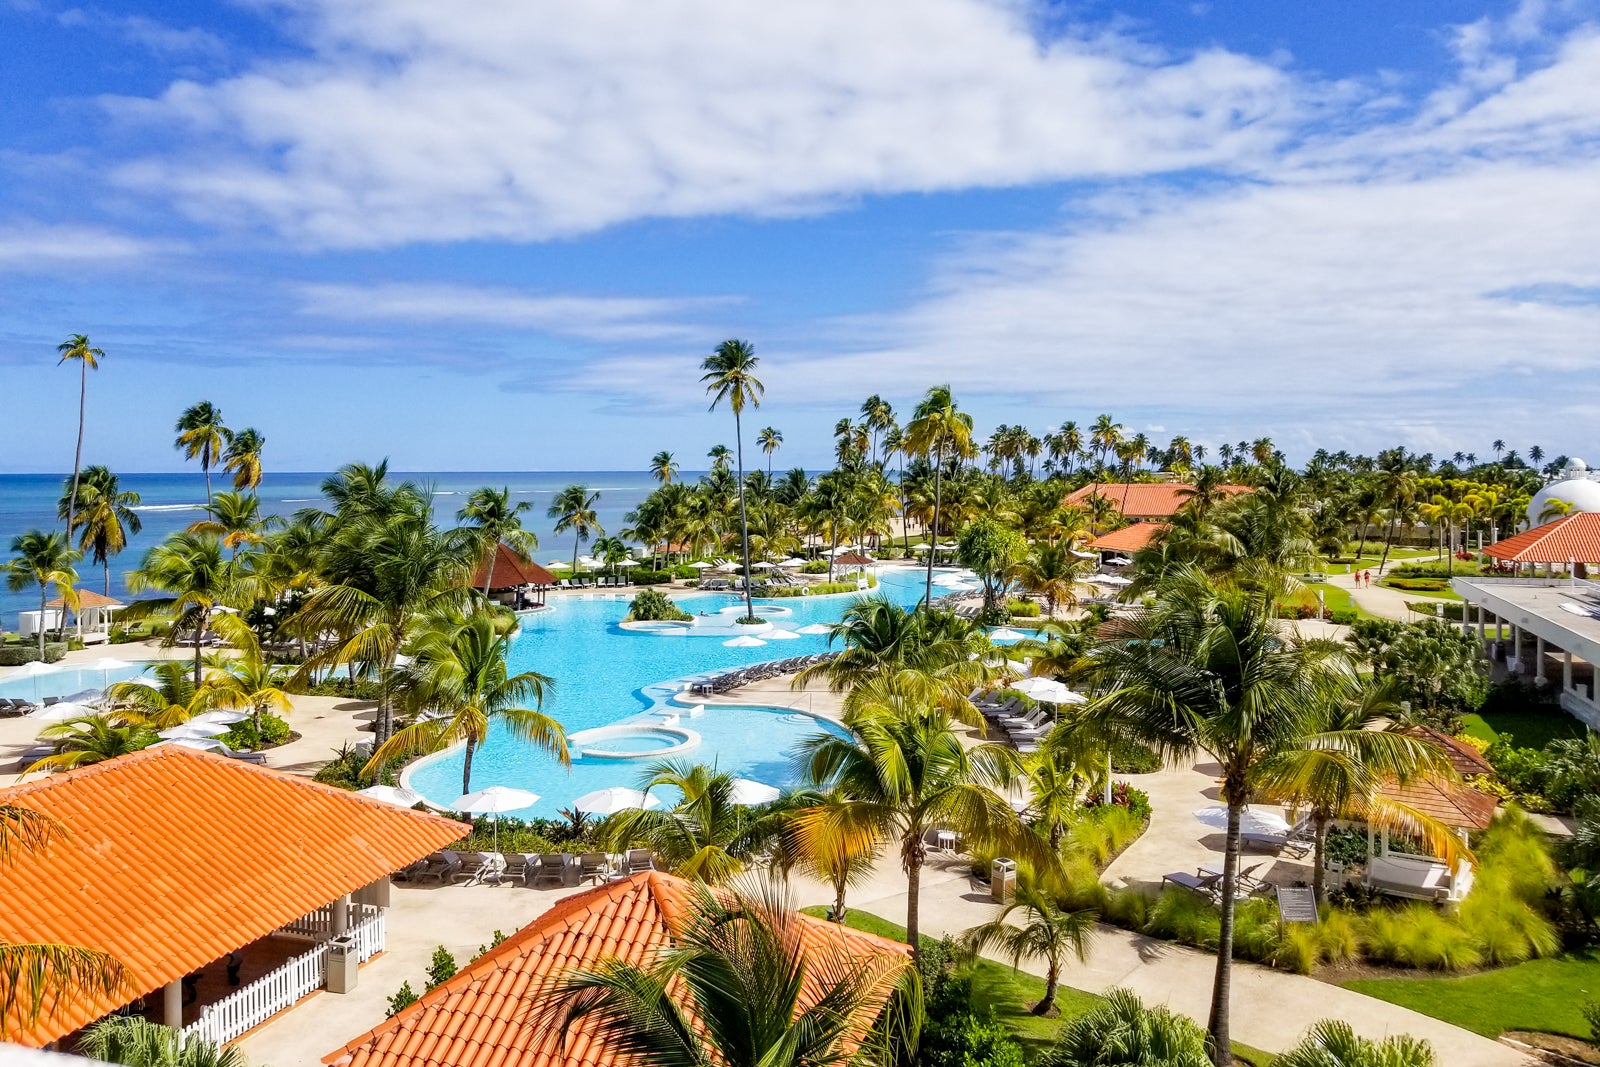 Tropical Hyatt resort overlooking the pool and ocean